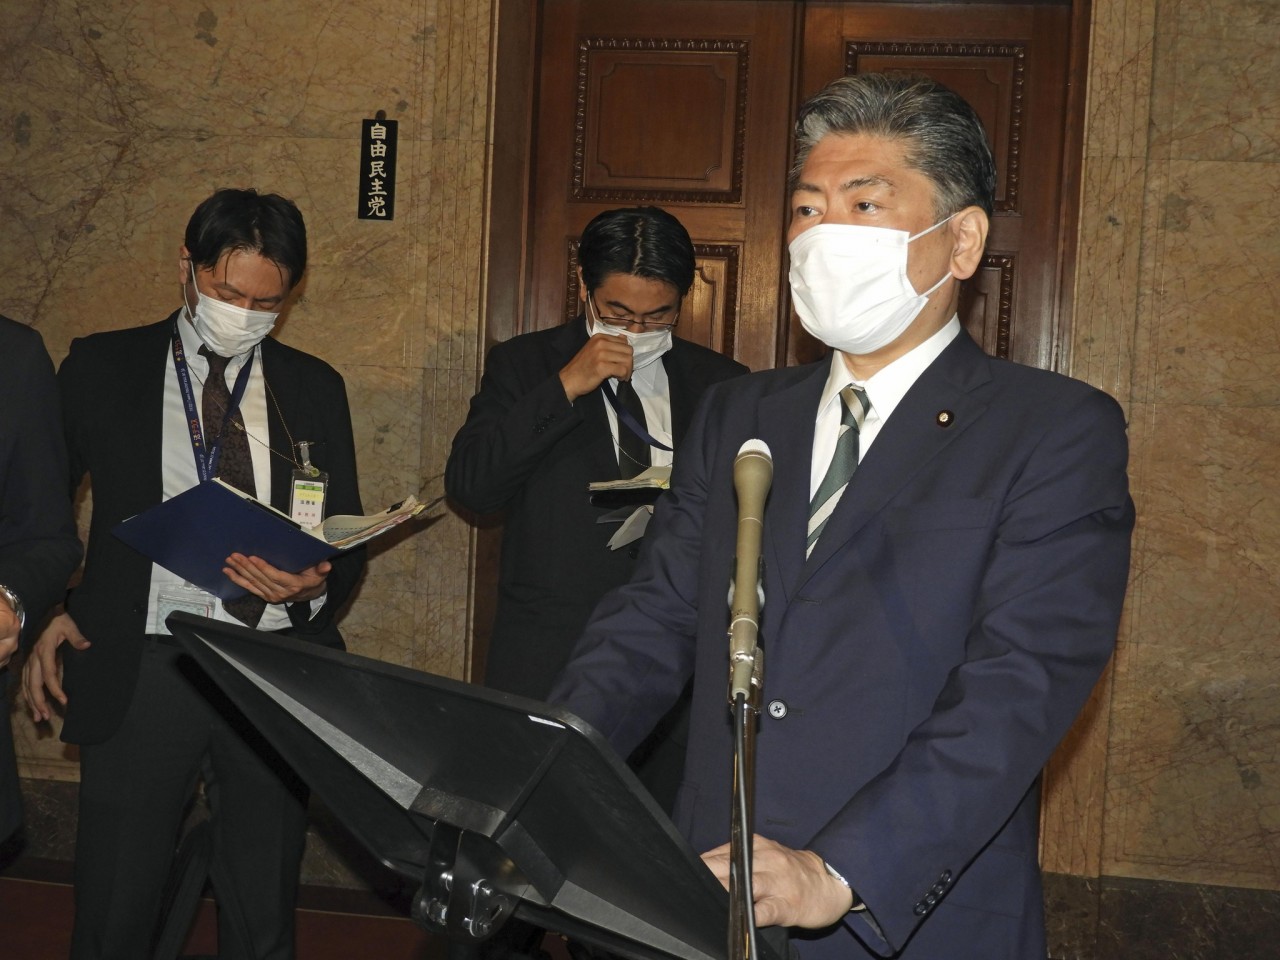 Thực tập sinh bị hành hung tại Nhật: Rút giấy phép tổ chức giới thiệu